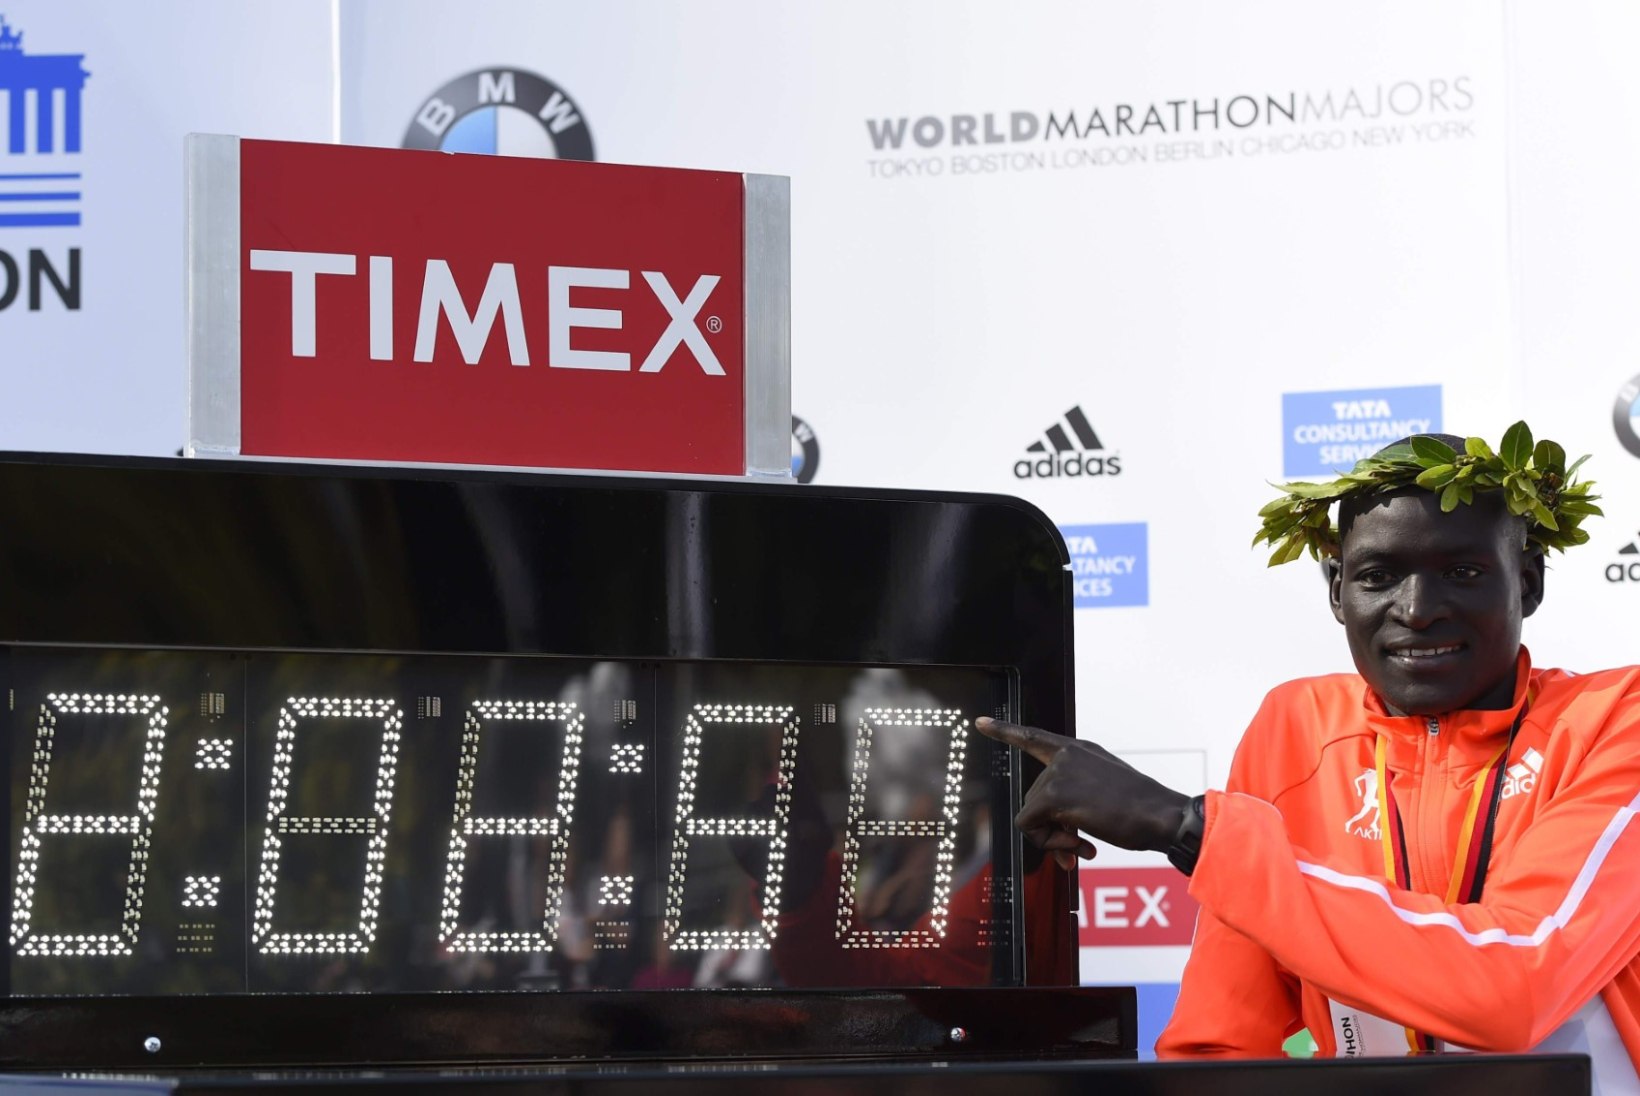 Mitukümmend eestlast nautisid Berliini maratoni, mis tipnes vägeva  maailmarekordi püstitamisega